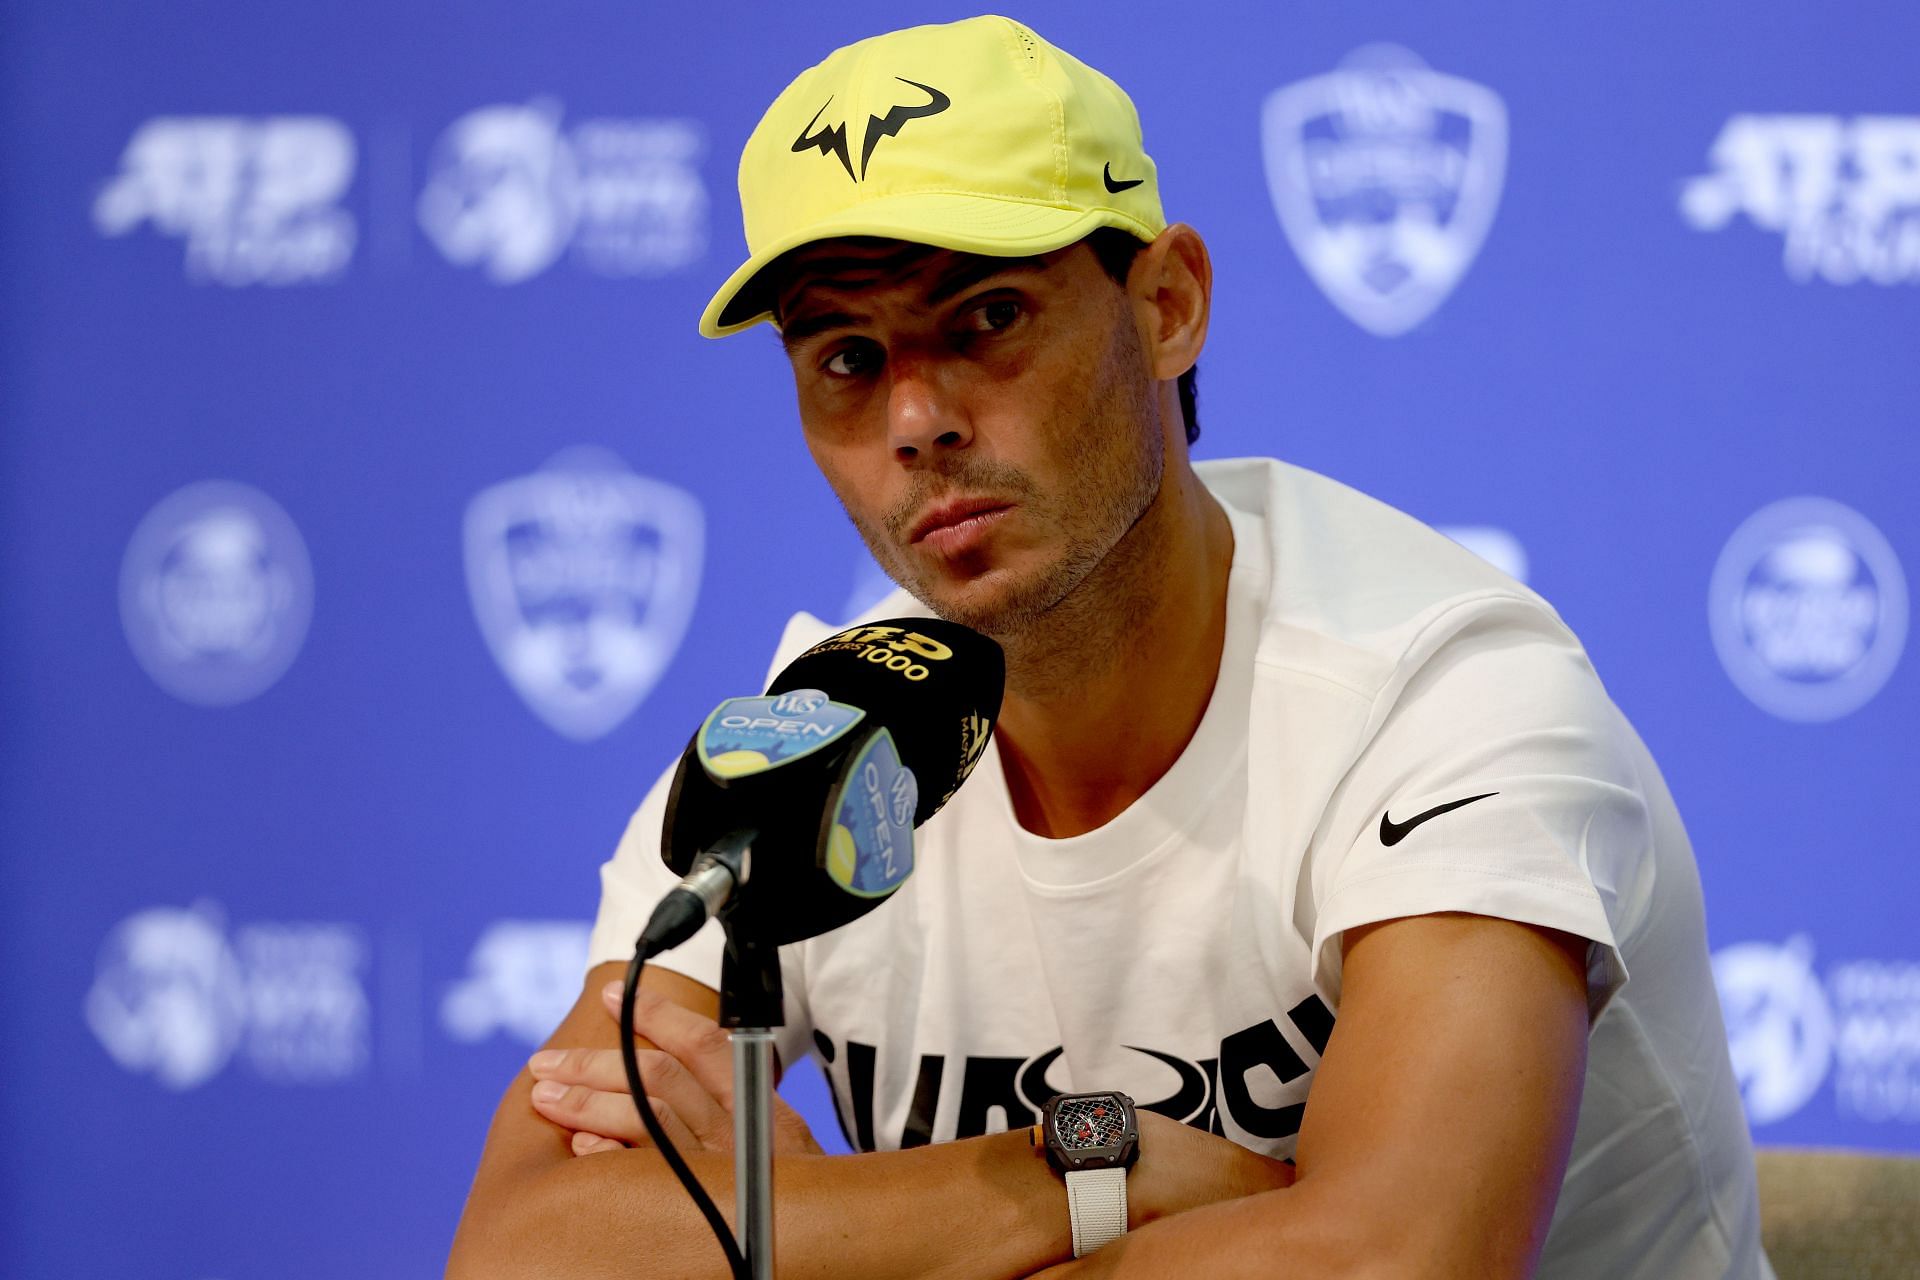 Rafael Nadal at a press conference in Cincinnati